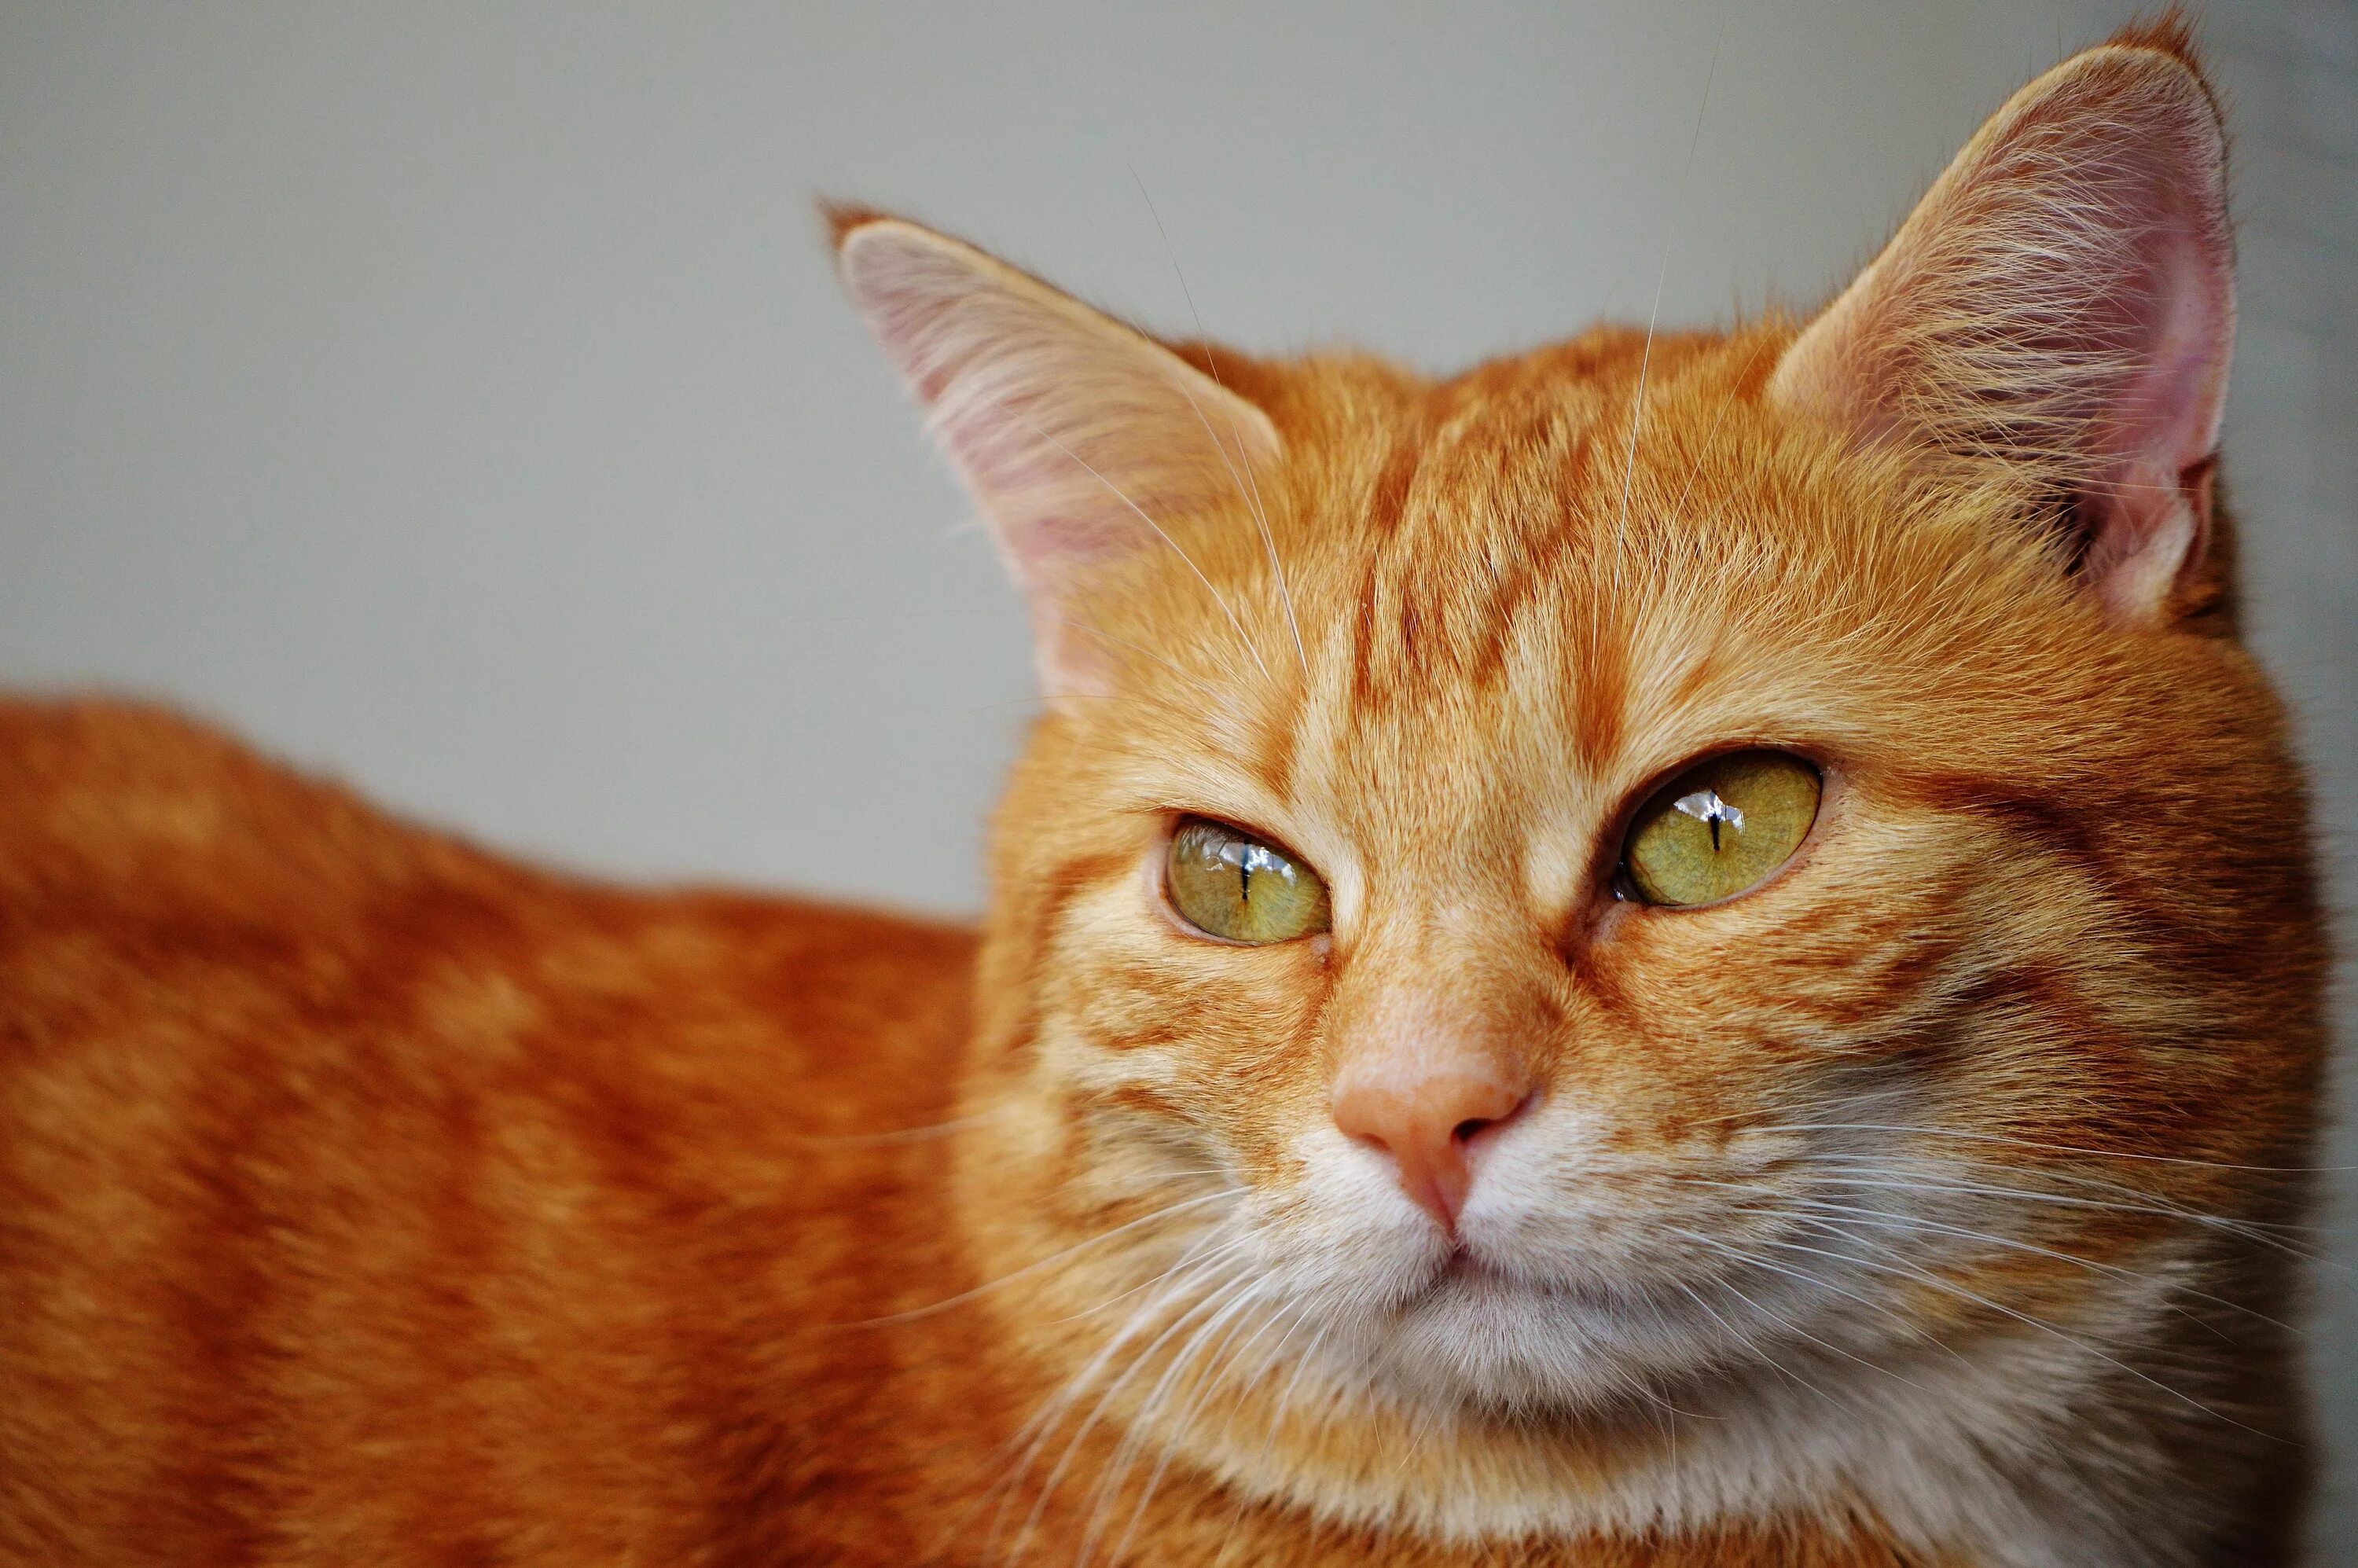 Европейский короткошерстный кот рыжий. Европейская короткошерстная кошка рыжая. Бразильская короткошерстная кошка рыжая цейлонская. Бенгальская короткошерстная кошка рыжая. Серо рыжий окрас кошки